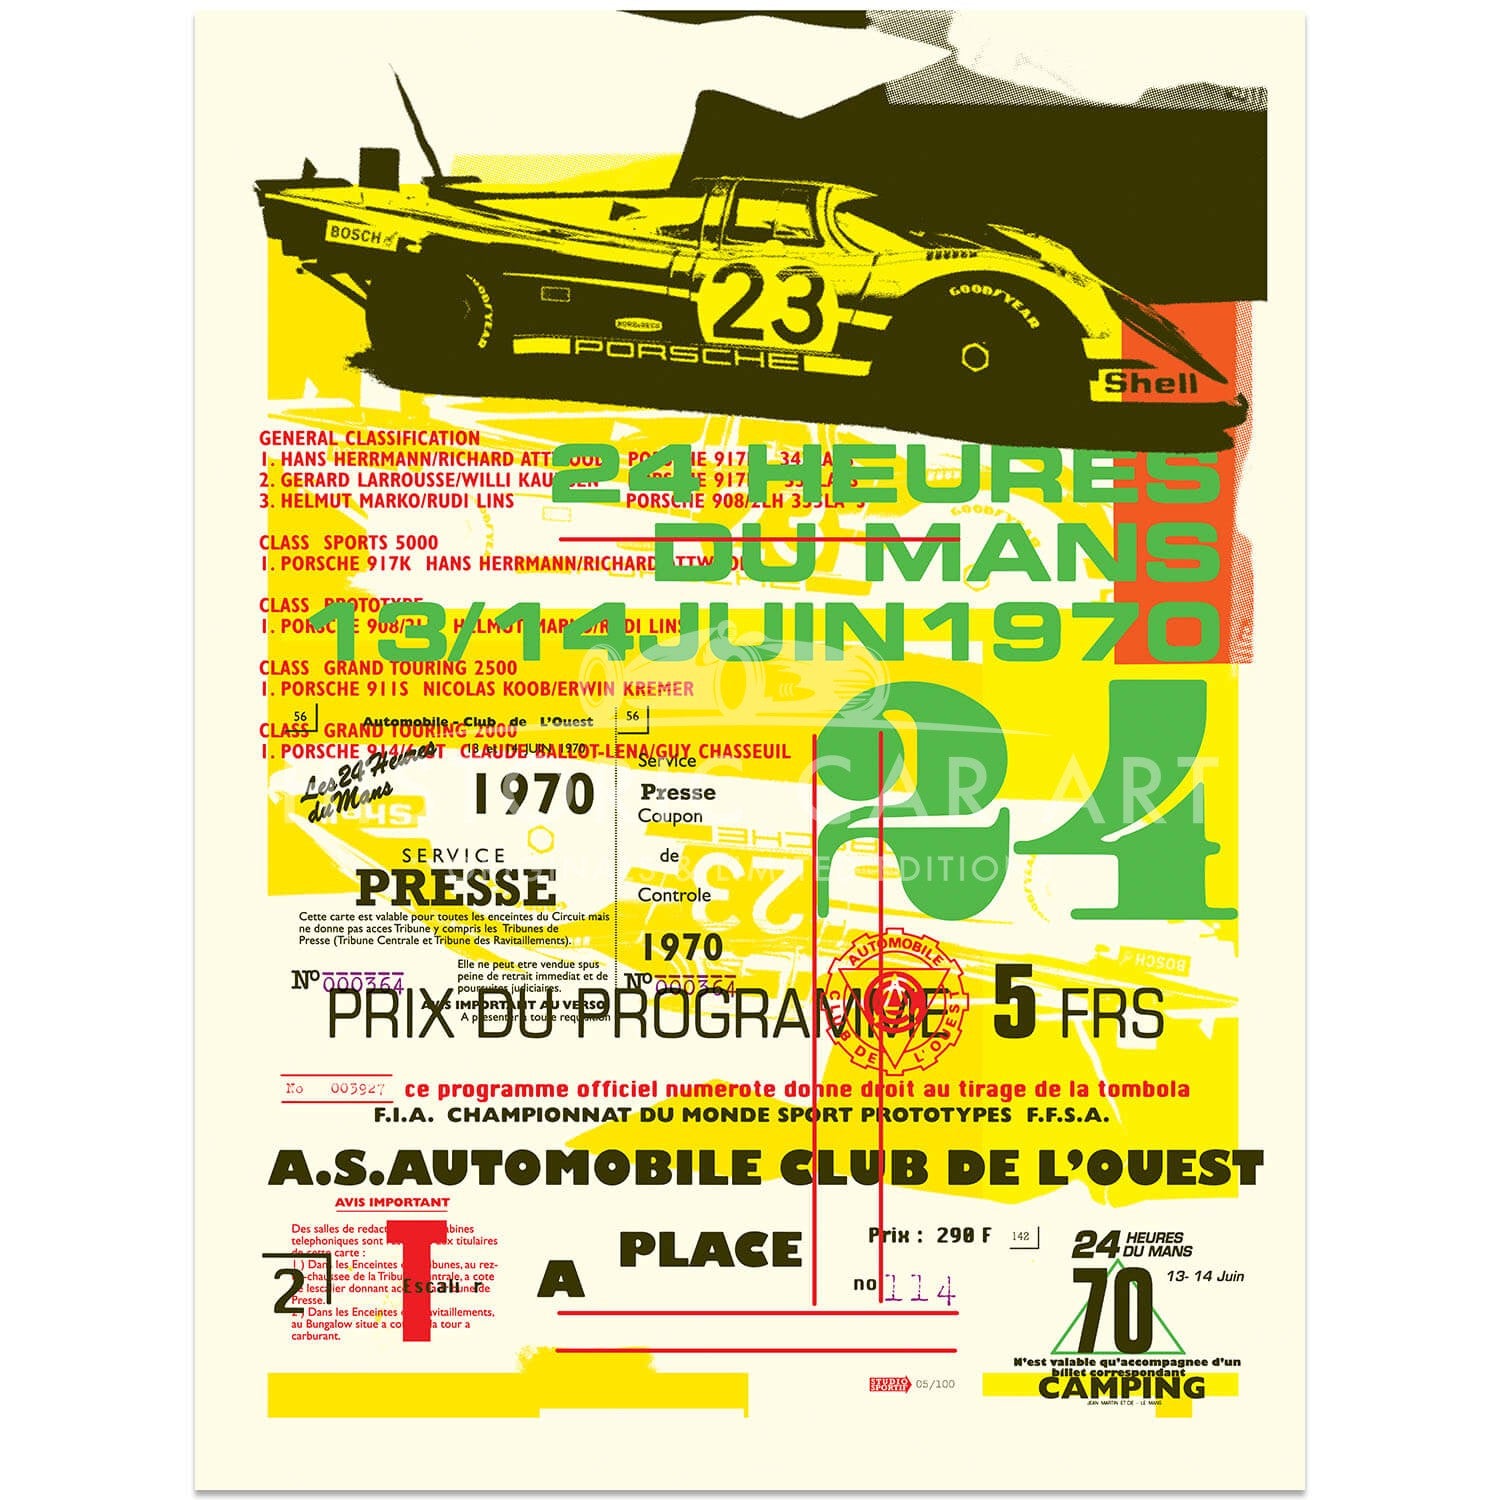 Porsche 917 | 1970 Le Mans 24 Hours Celebration | Art Print | Poster #2